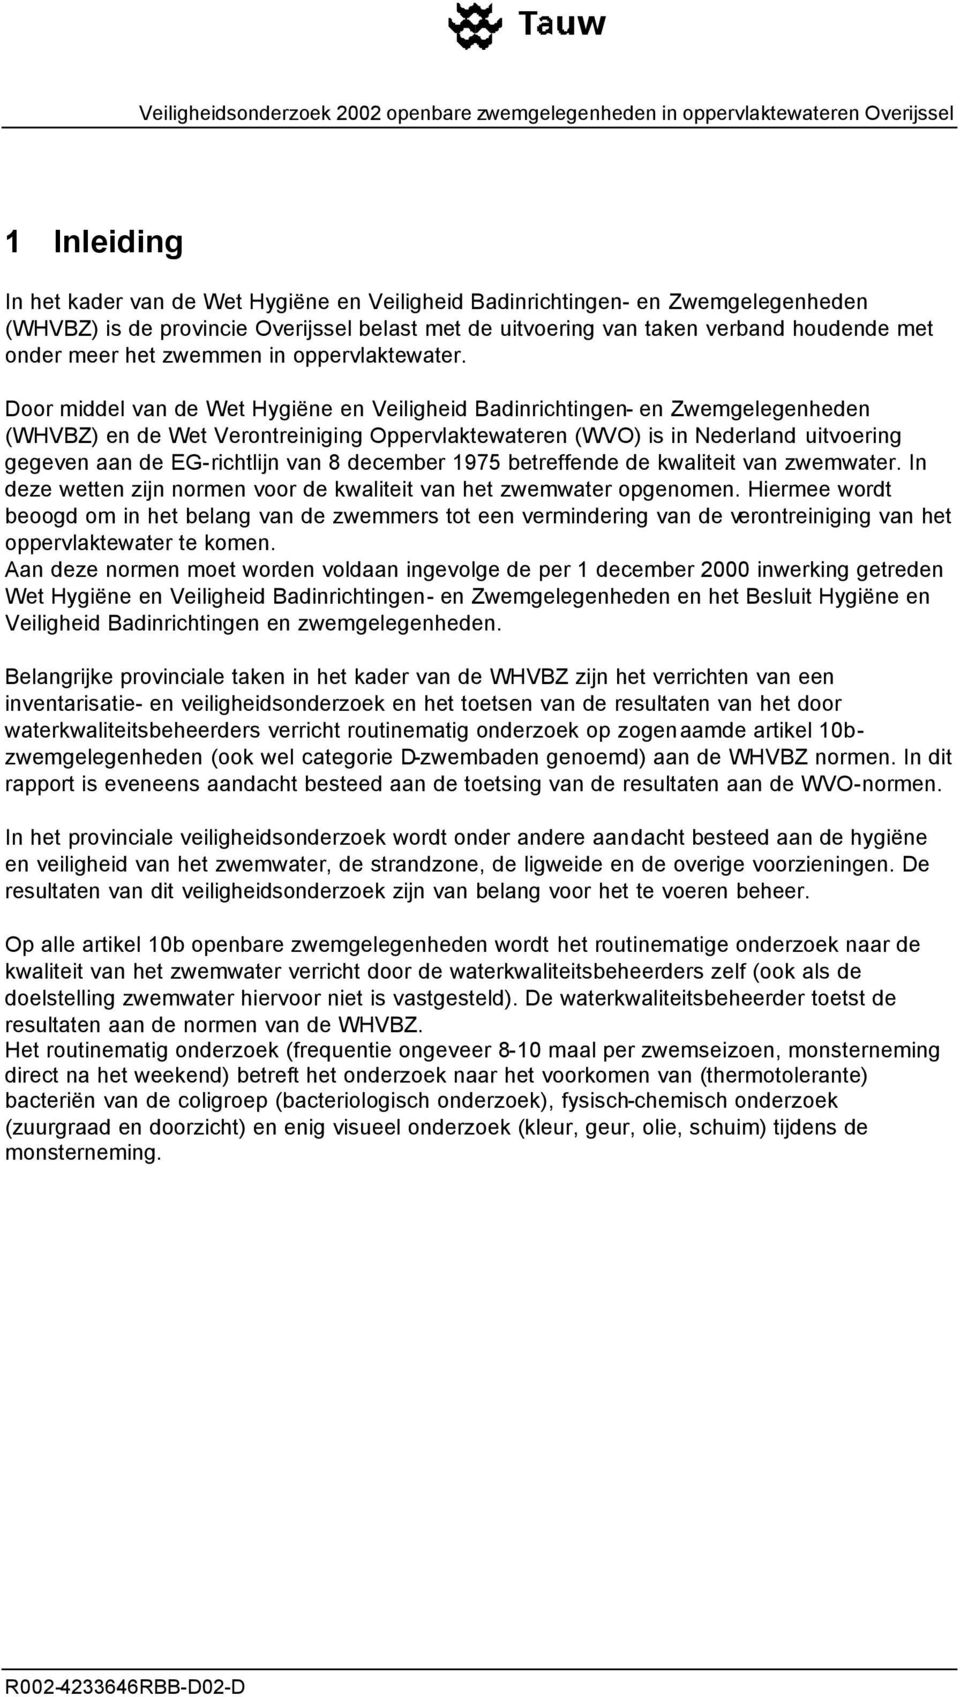 Door middel van de Wet Hygiëne en Veiligheid Badinrichtingen- en Zwemgelegenheden (WHVBZ) en de Wet Verontreiniging Oppervlaktewateren (WVO) is in Nederland uitvoering gegeven aan de EG-richtlijn van